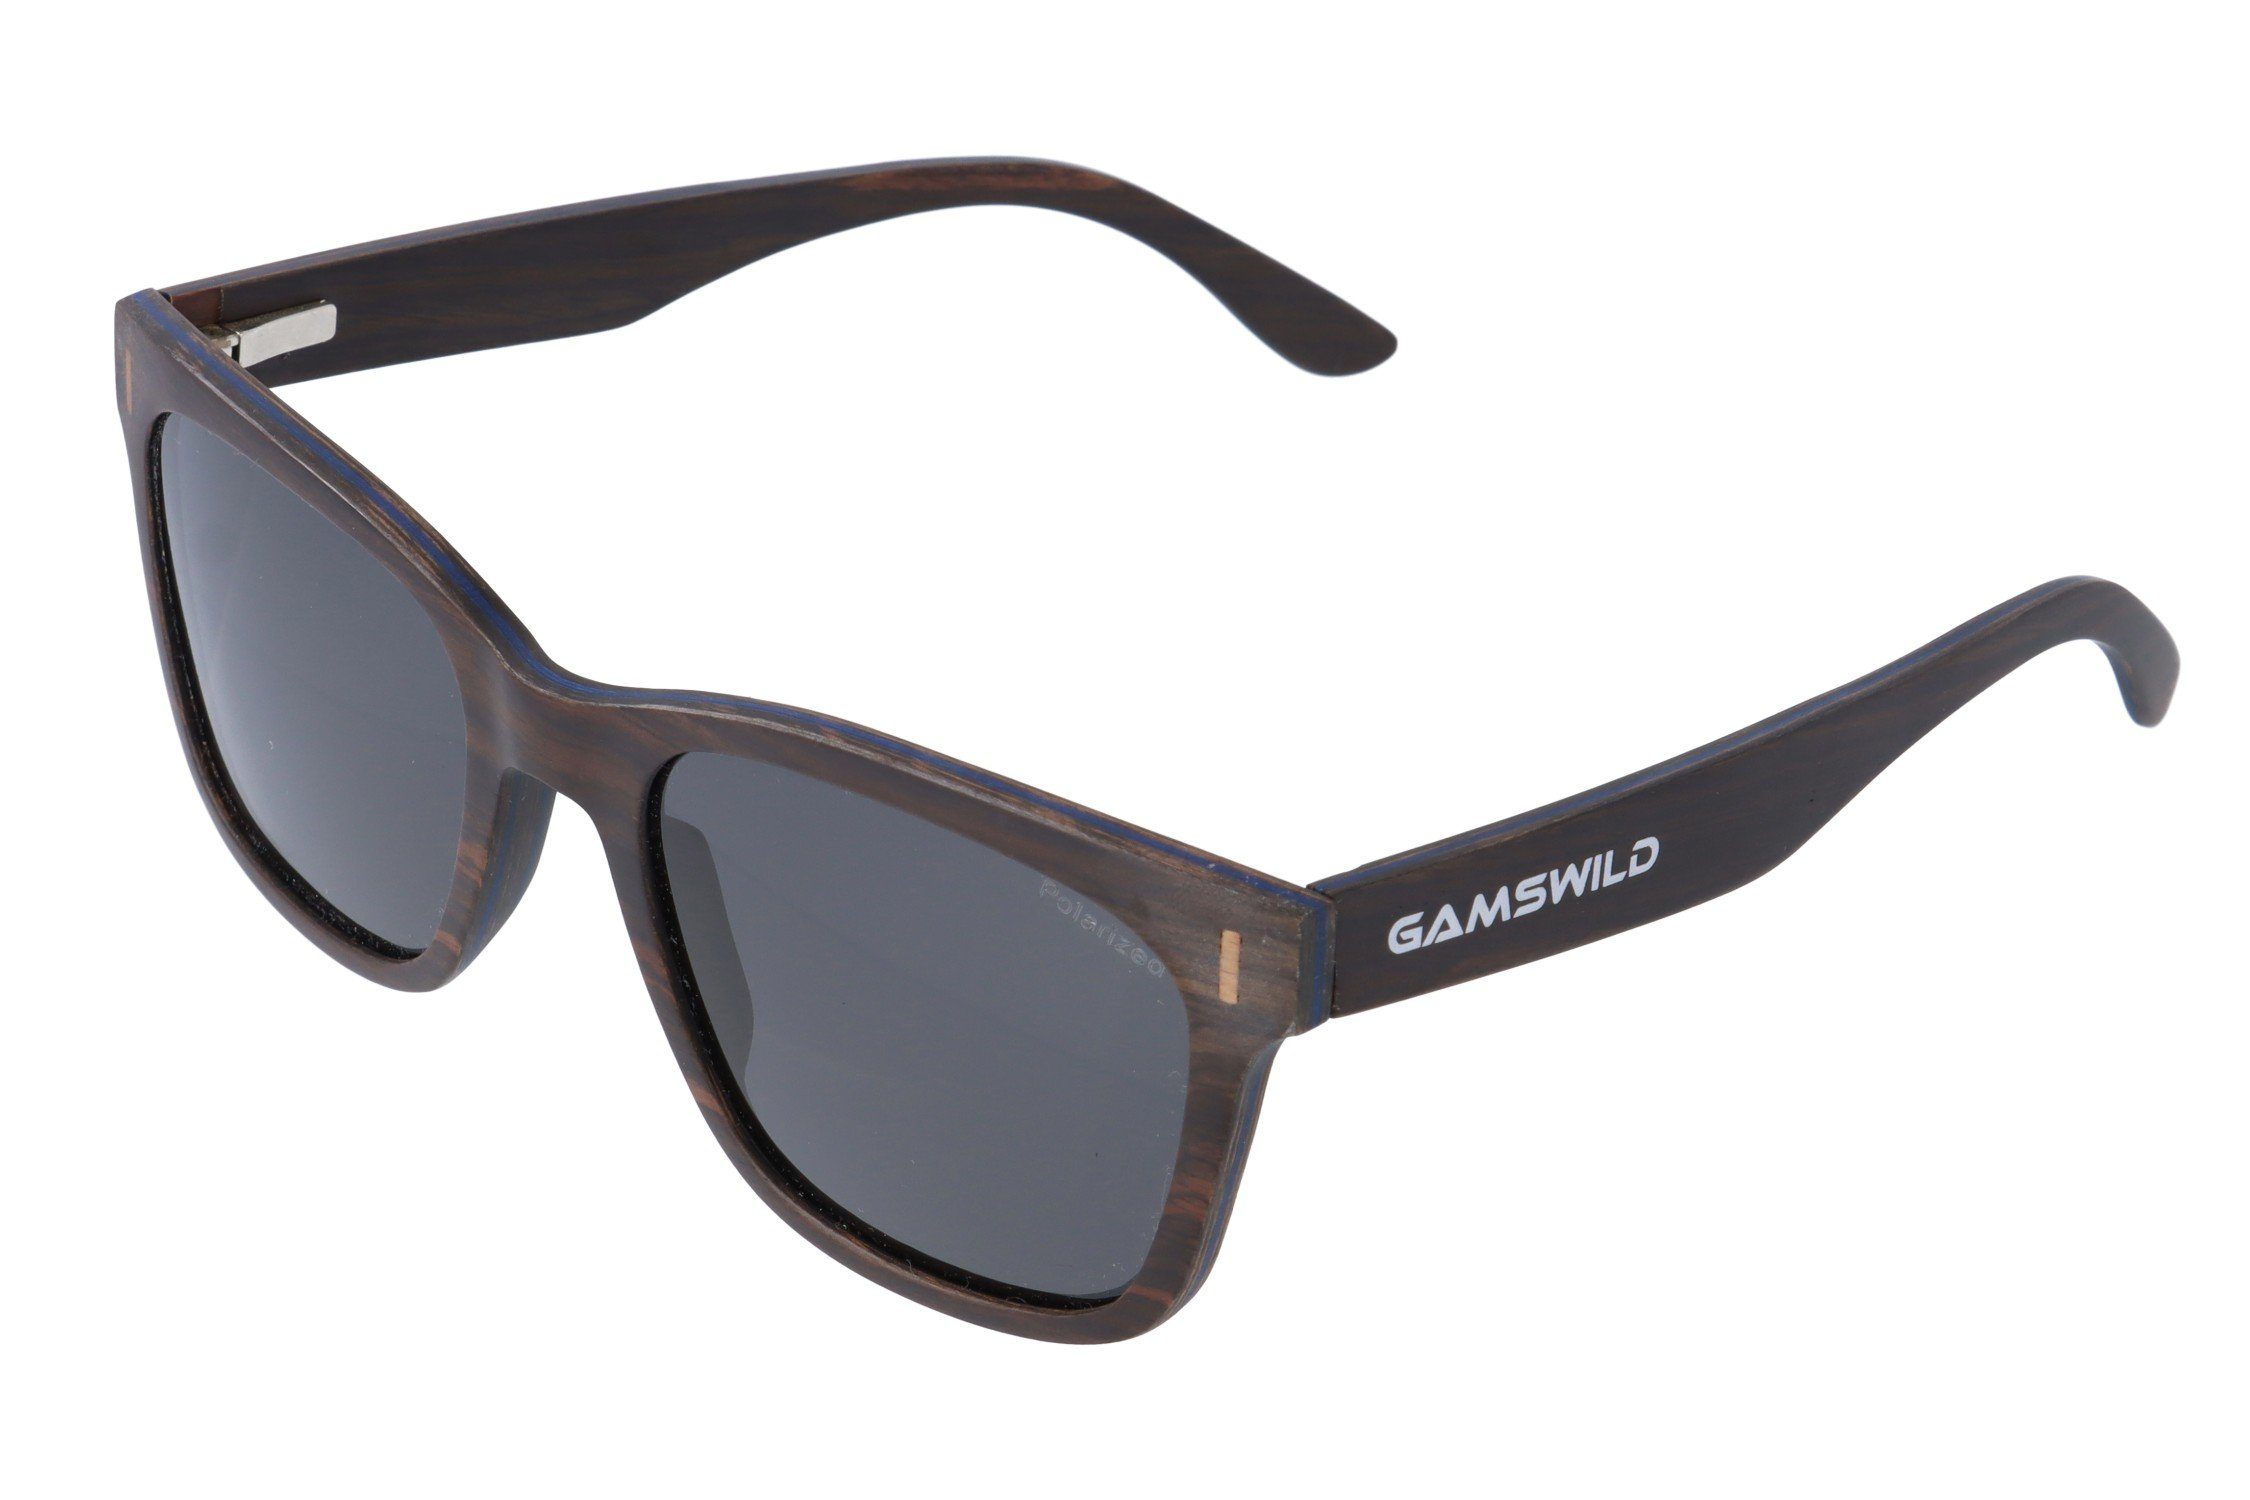 Gamswild Sonnenbrille WM0011 GAMSSTYLE Holzbrille Damen Herren Unisex, polarisierte Gläser in braun, grau, blau & G15 Glas grau